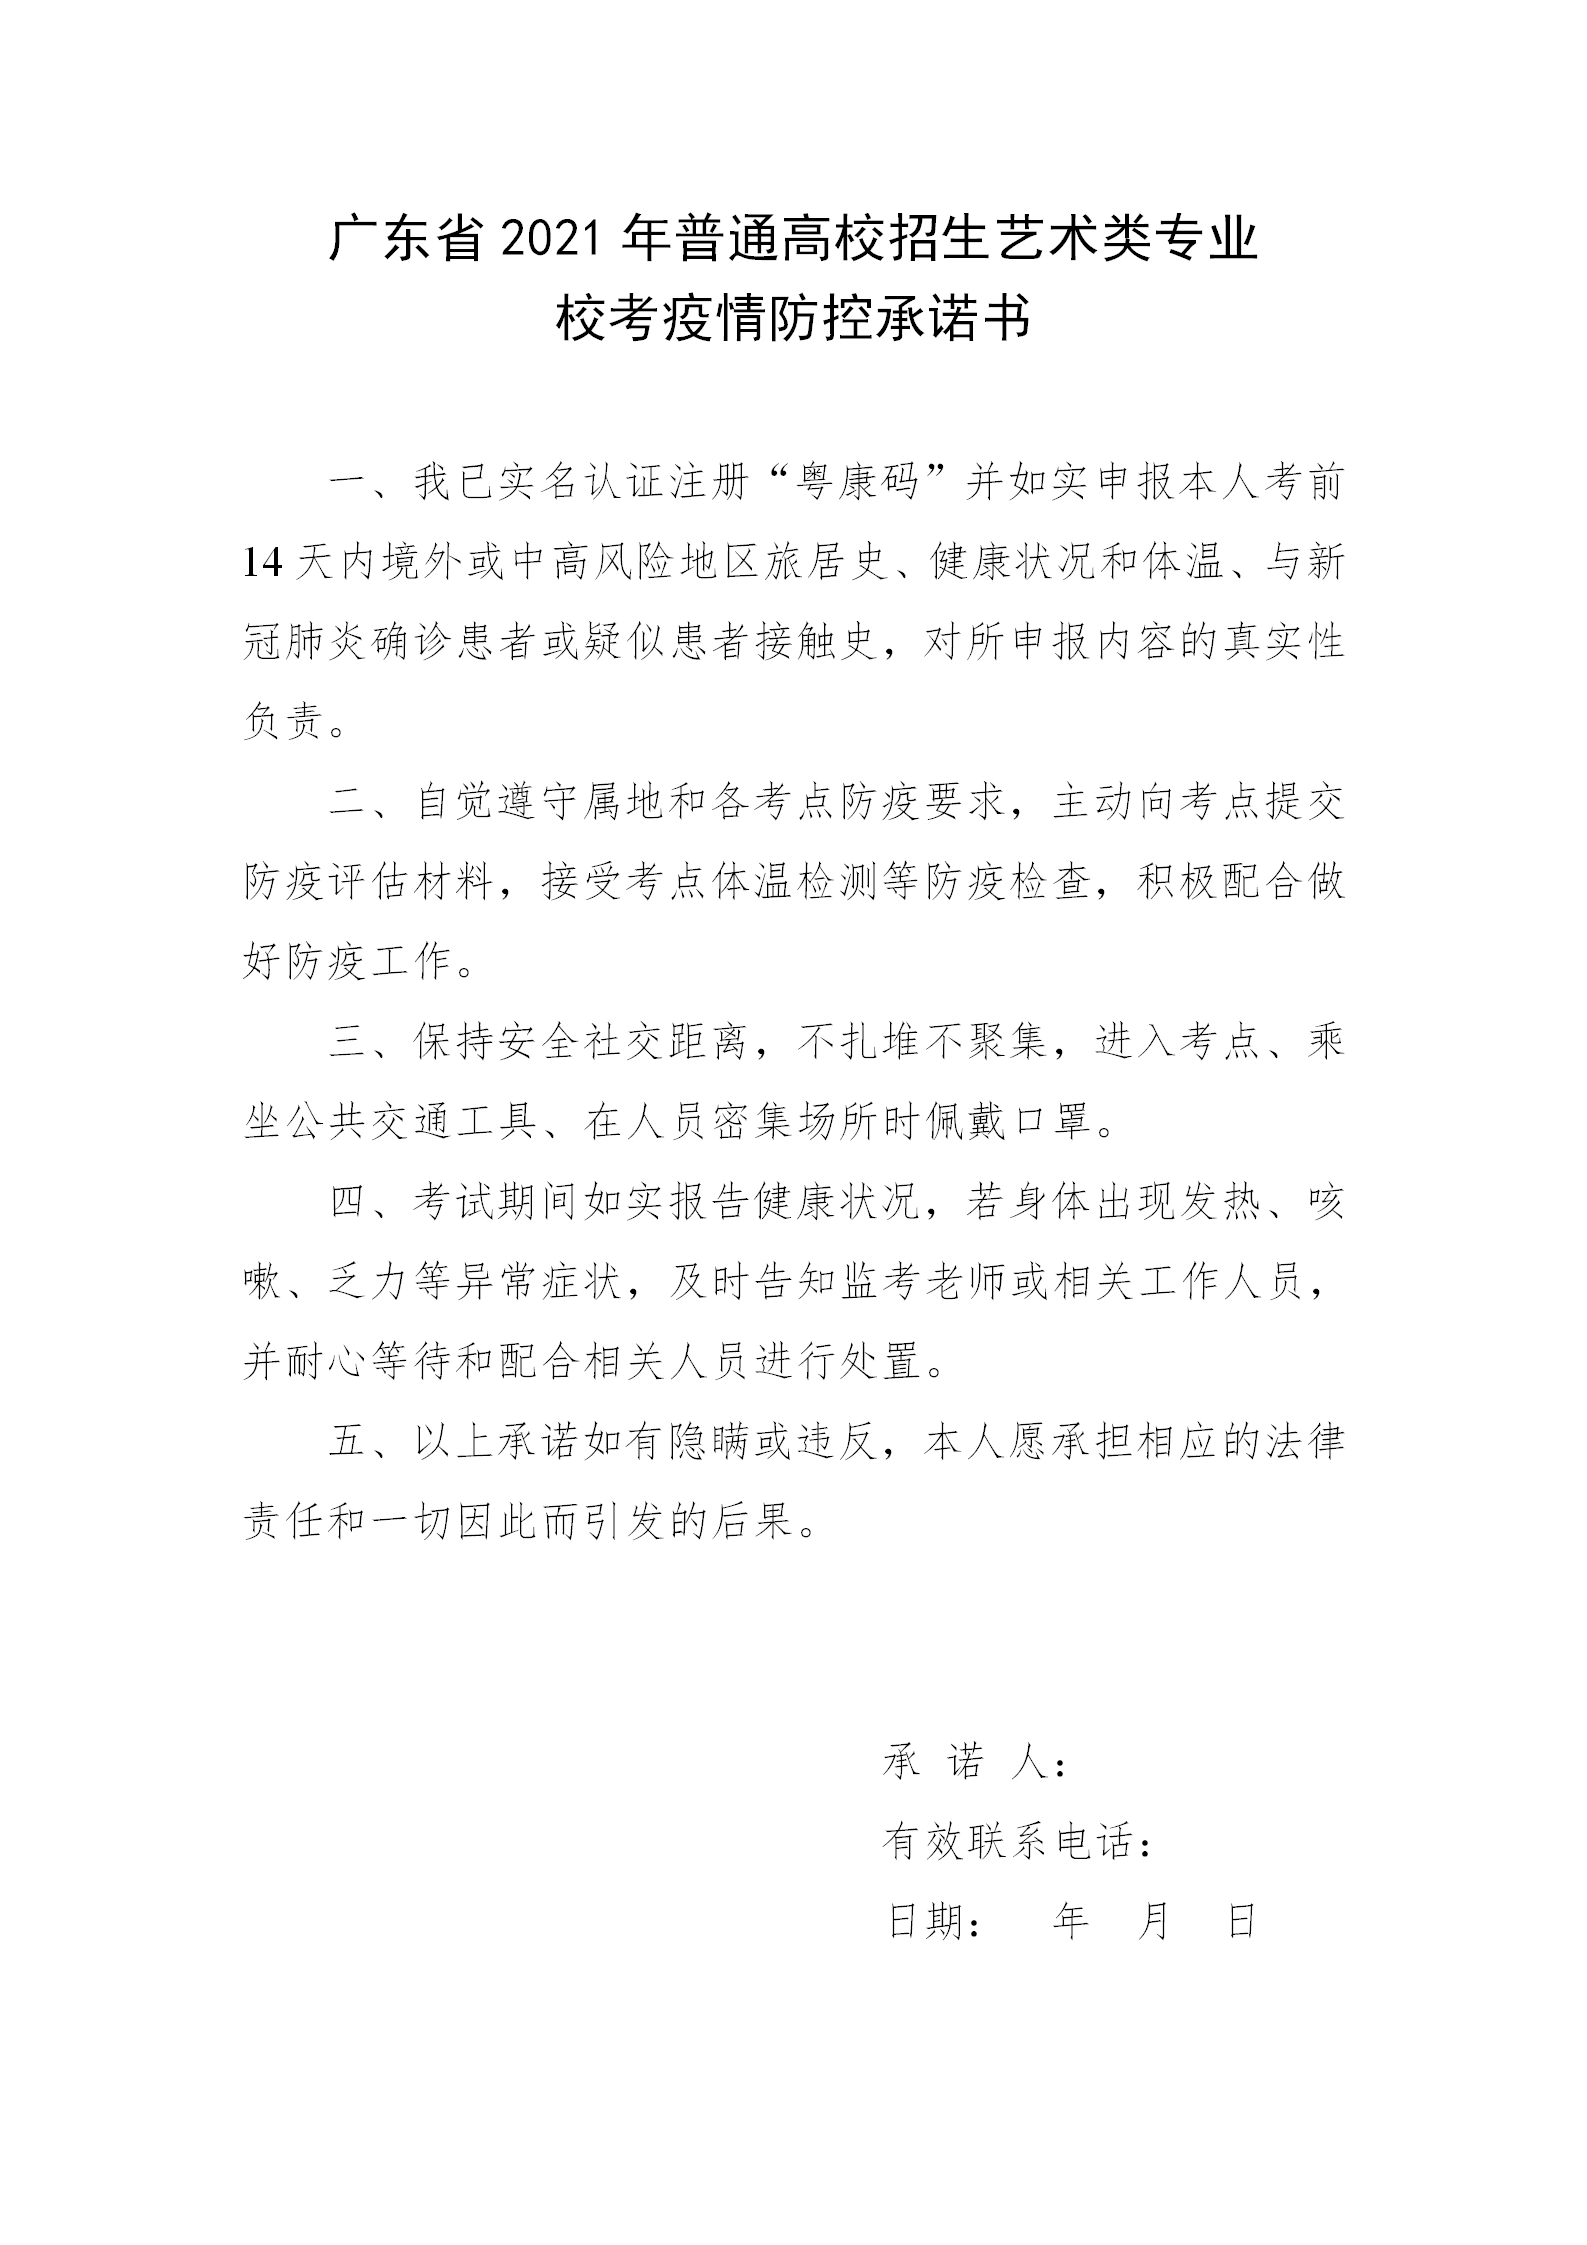 附件2：广东省2021年普通高校招生艺术类专业校考疫情防控承诺书_01.png